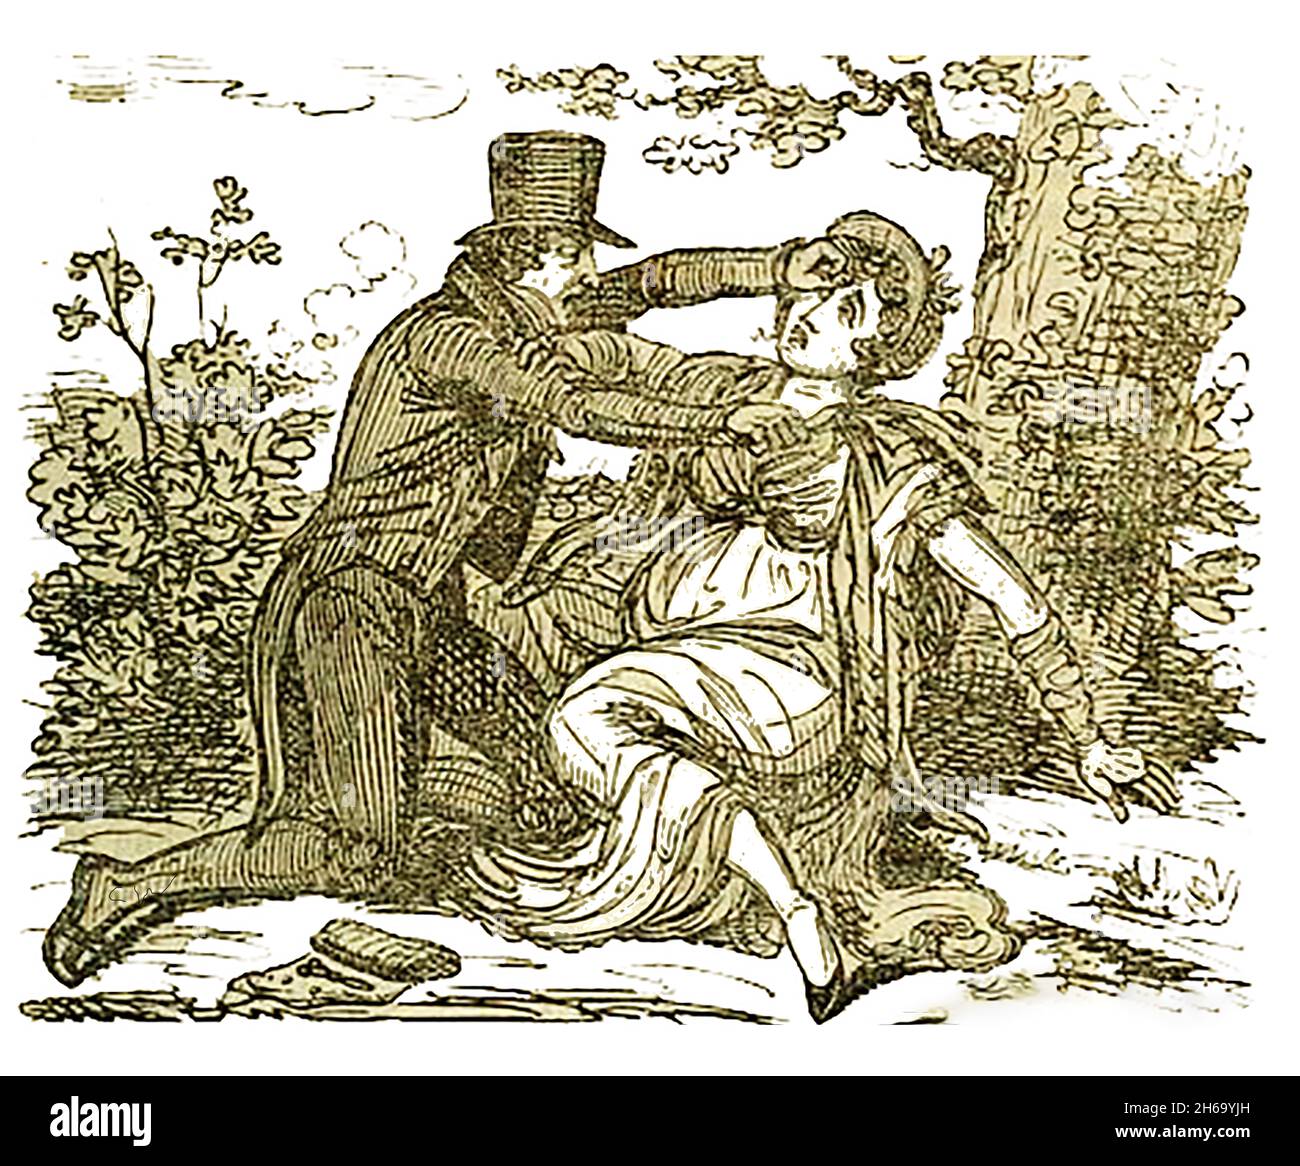 1824 George Caddell di Bromsgrove, che era un farmacista e un chirurgo autodidatta, fu giustiziato per l'omicidio del suo amante incinta (che portava il figlio di un soldato), Elizabeth Price, che aveva promesso di sposarsi e poi cambiò idea. Dopo aver tagliato la gola in un campo fece la sua fuga, lasciandogli dietro il coltello e il suo caso di strumenti che bastavano a condannarlo. Fu giudicato colpevole e condannato a morte per esecuzione il 21 luglio 1700. Foto Stock